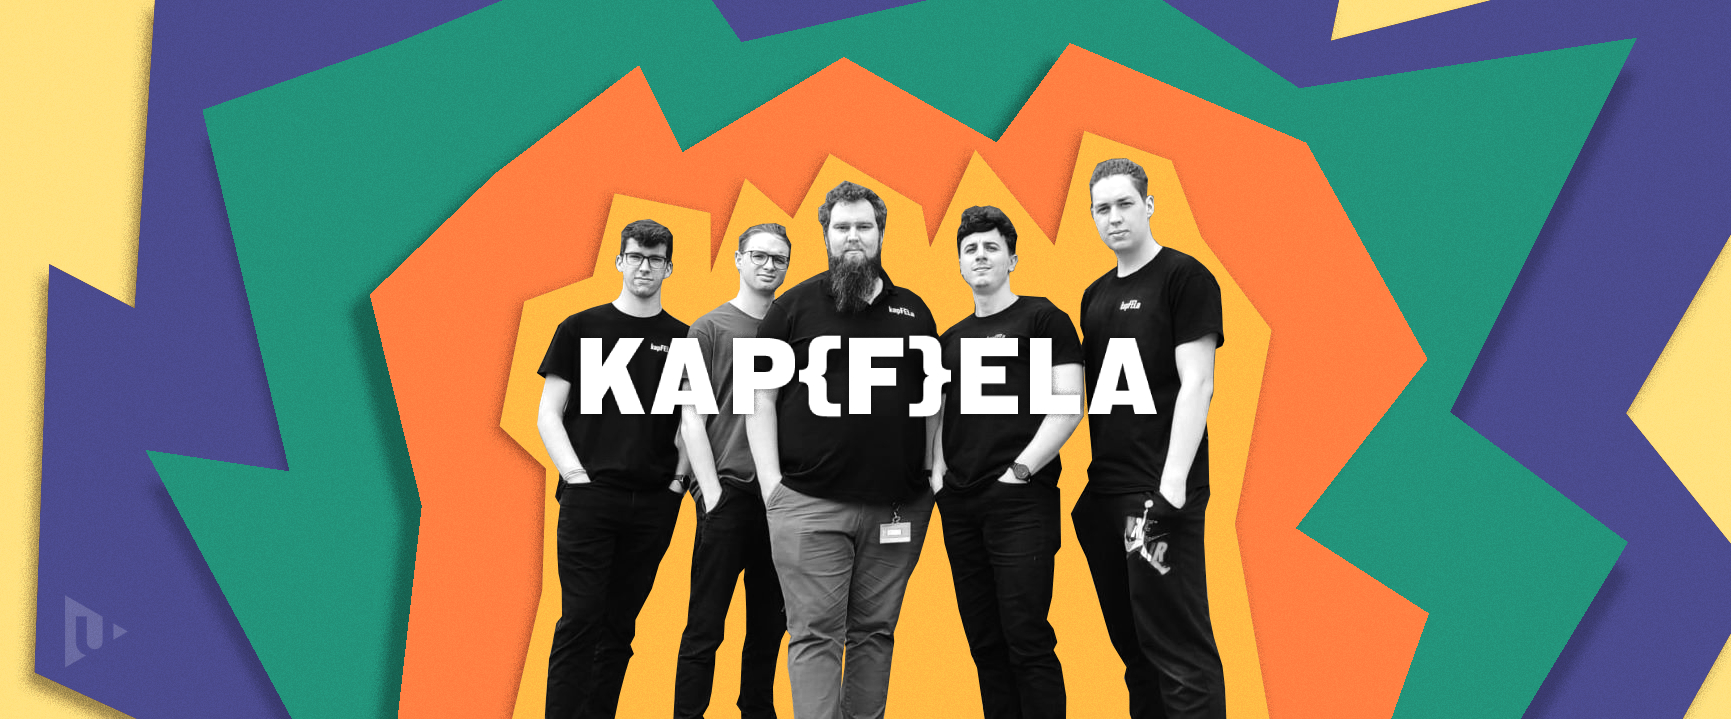 kapfela_final